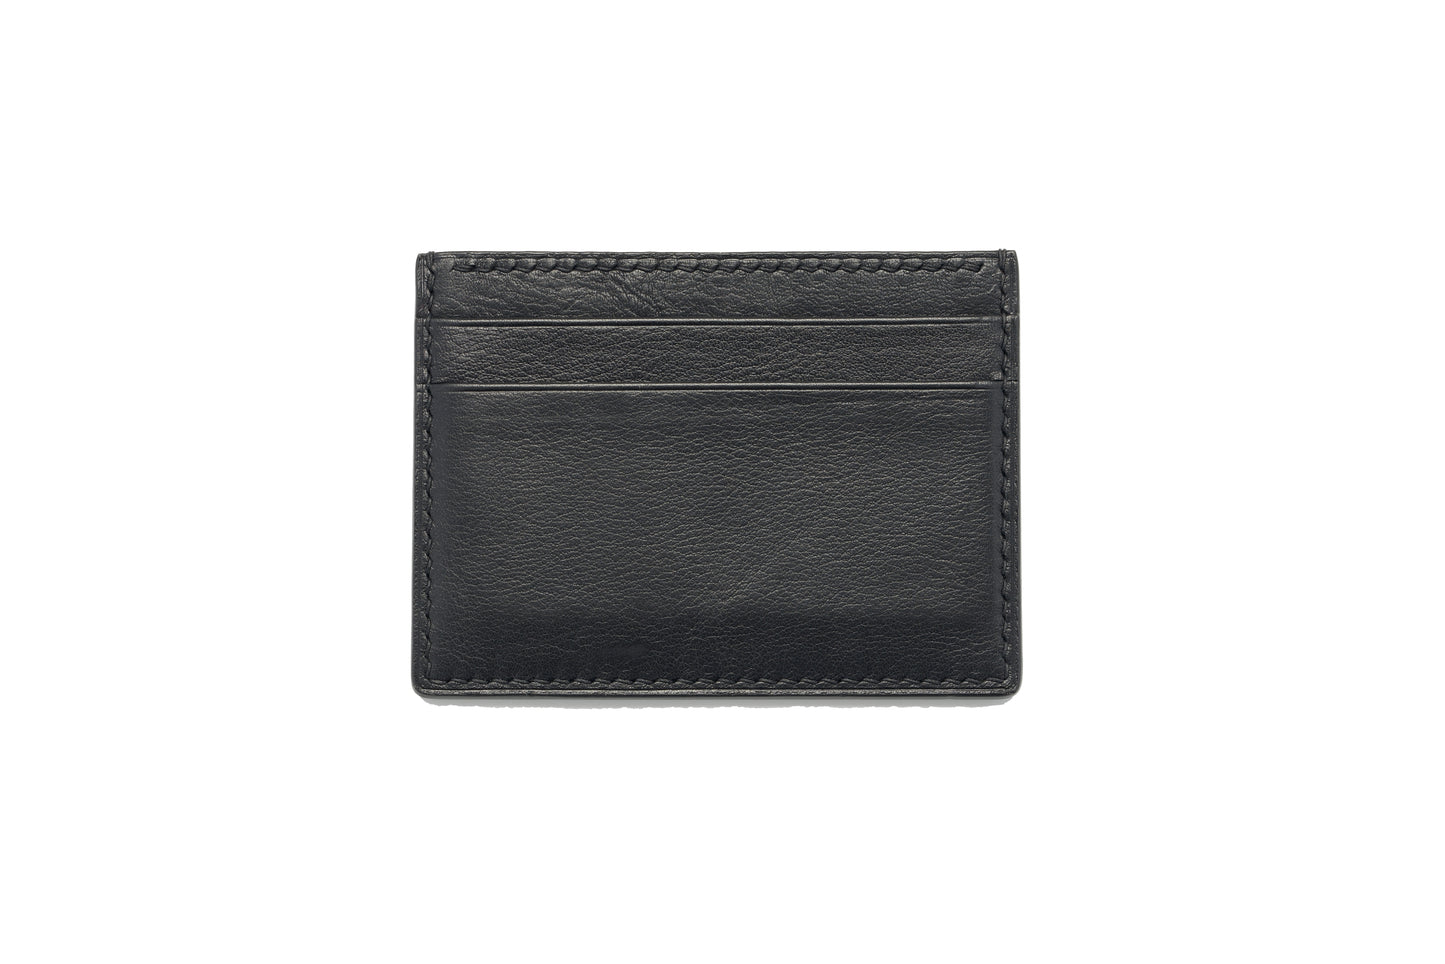 Vegetable Tanned Leather Card Holder - Black Slim 5-Pocket